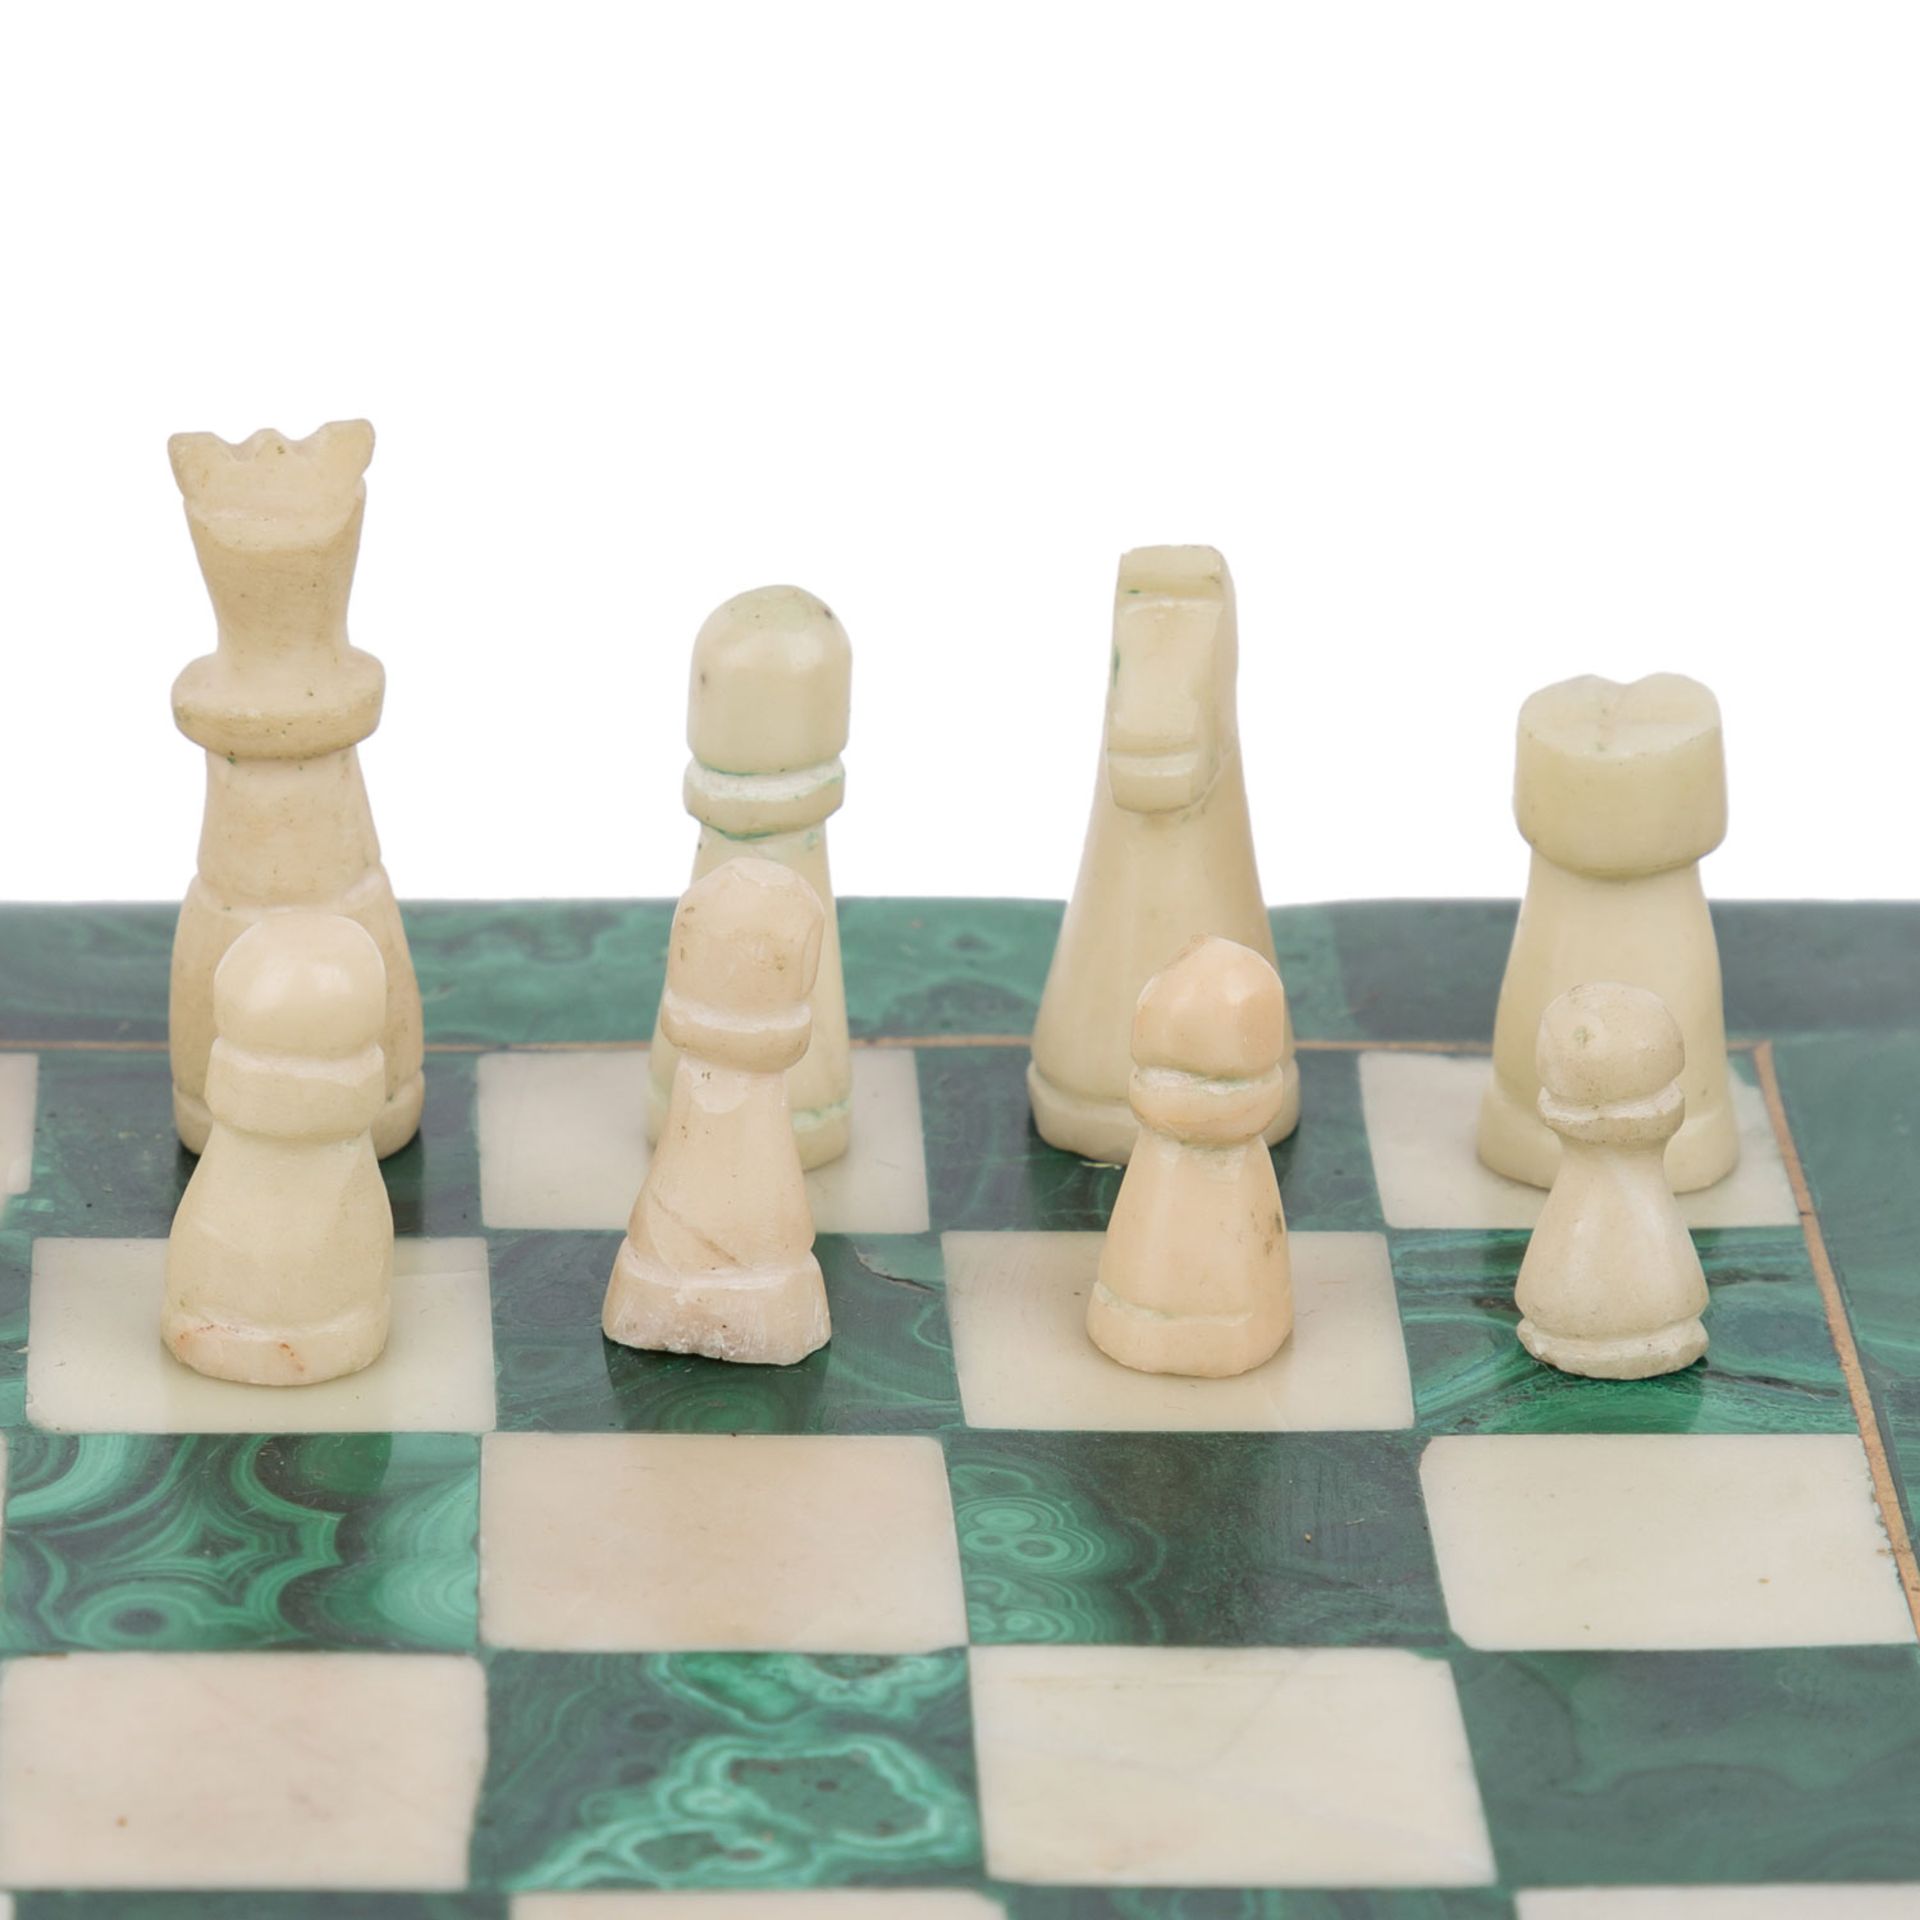 ZWEI STEINSCHACHSPIELESchweres Schachbrett aus Jaspis und Onyx, kleines Brett mit Malachitauflage, - Bild 7 aus 7